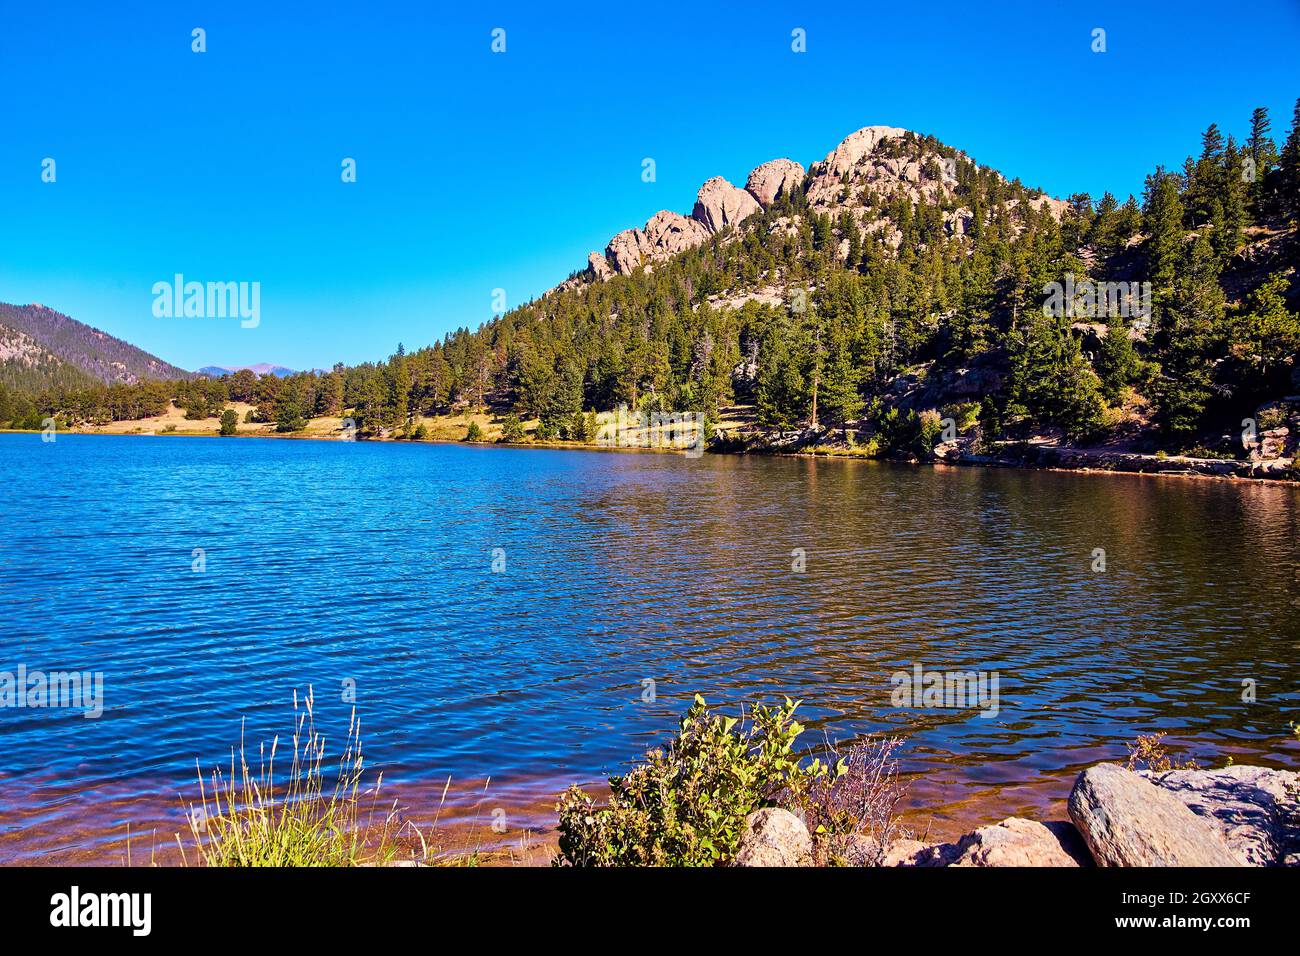 Blauer See mit felsigen Bergen im Hintergrund und strahlend blauem Himmel Stockfoto